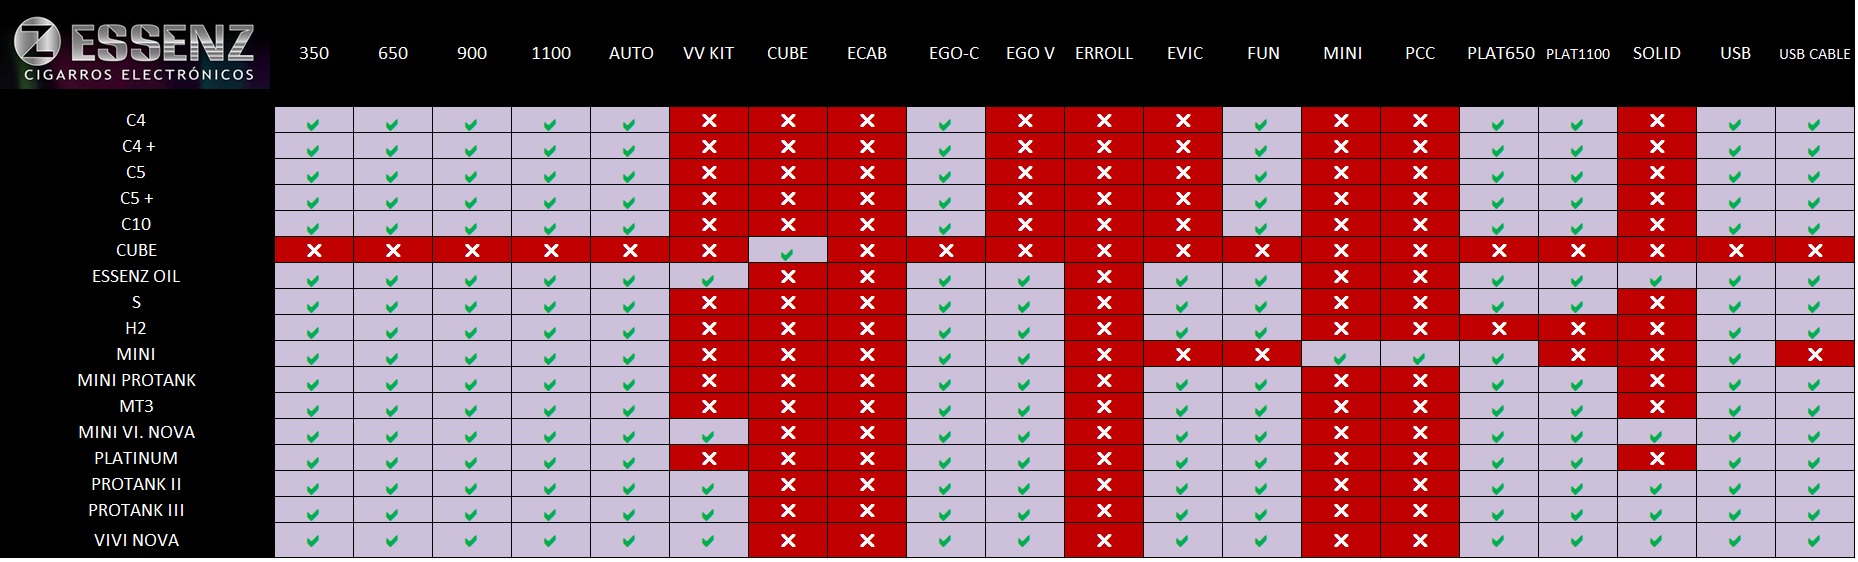 Tabla de compatibilidad Essenz (Clica sobre la imagen para ampliar)